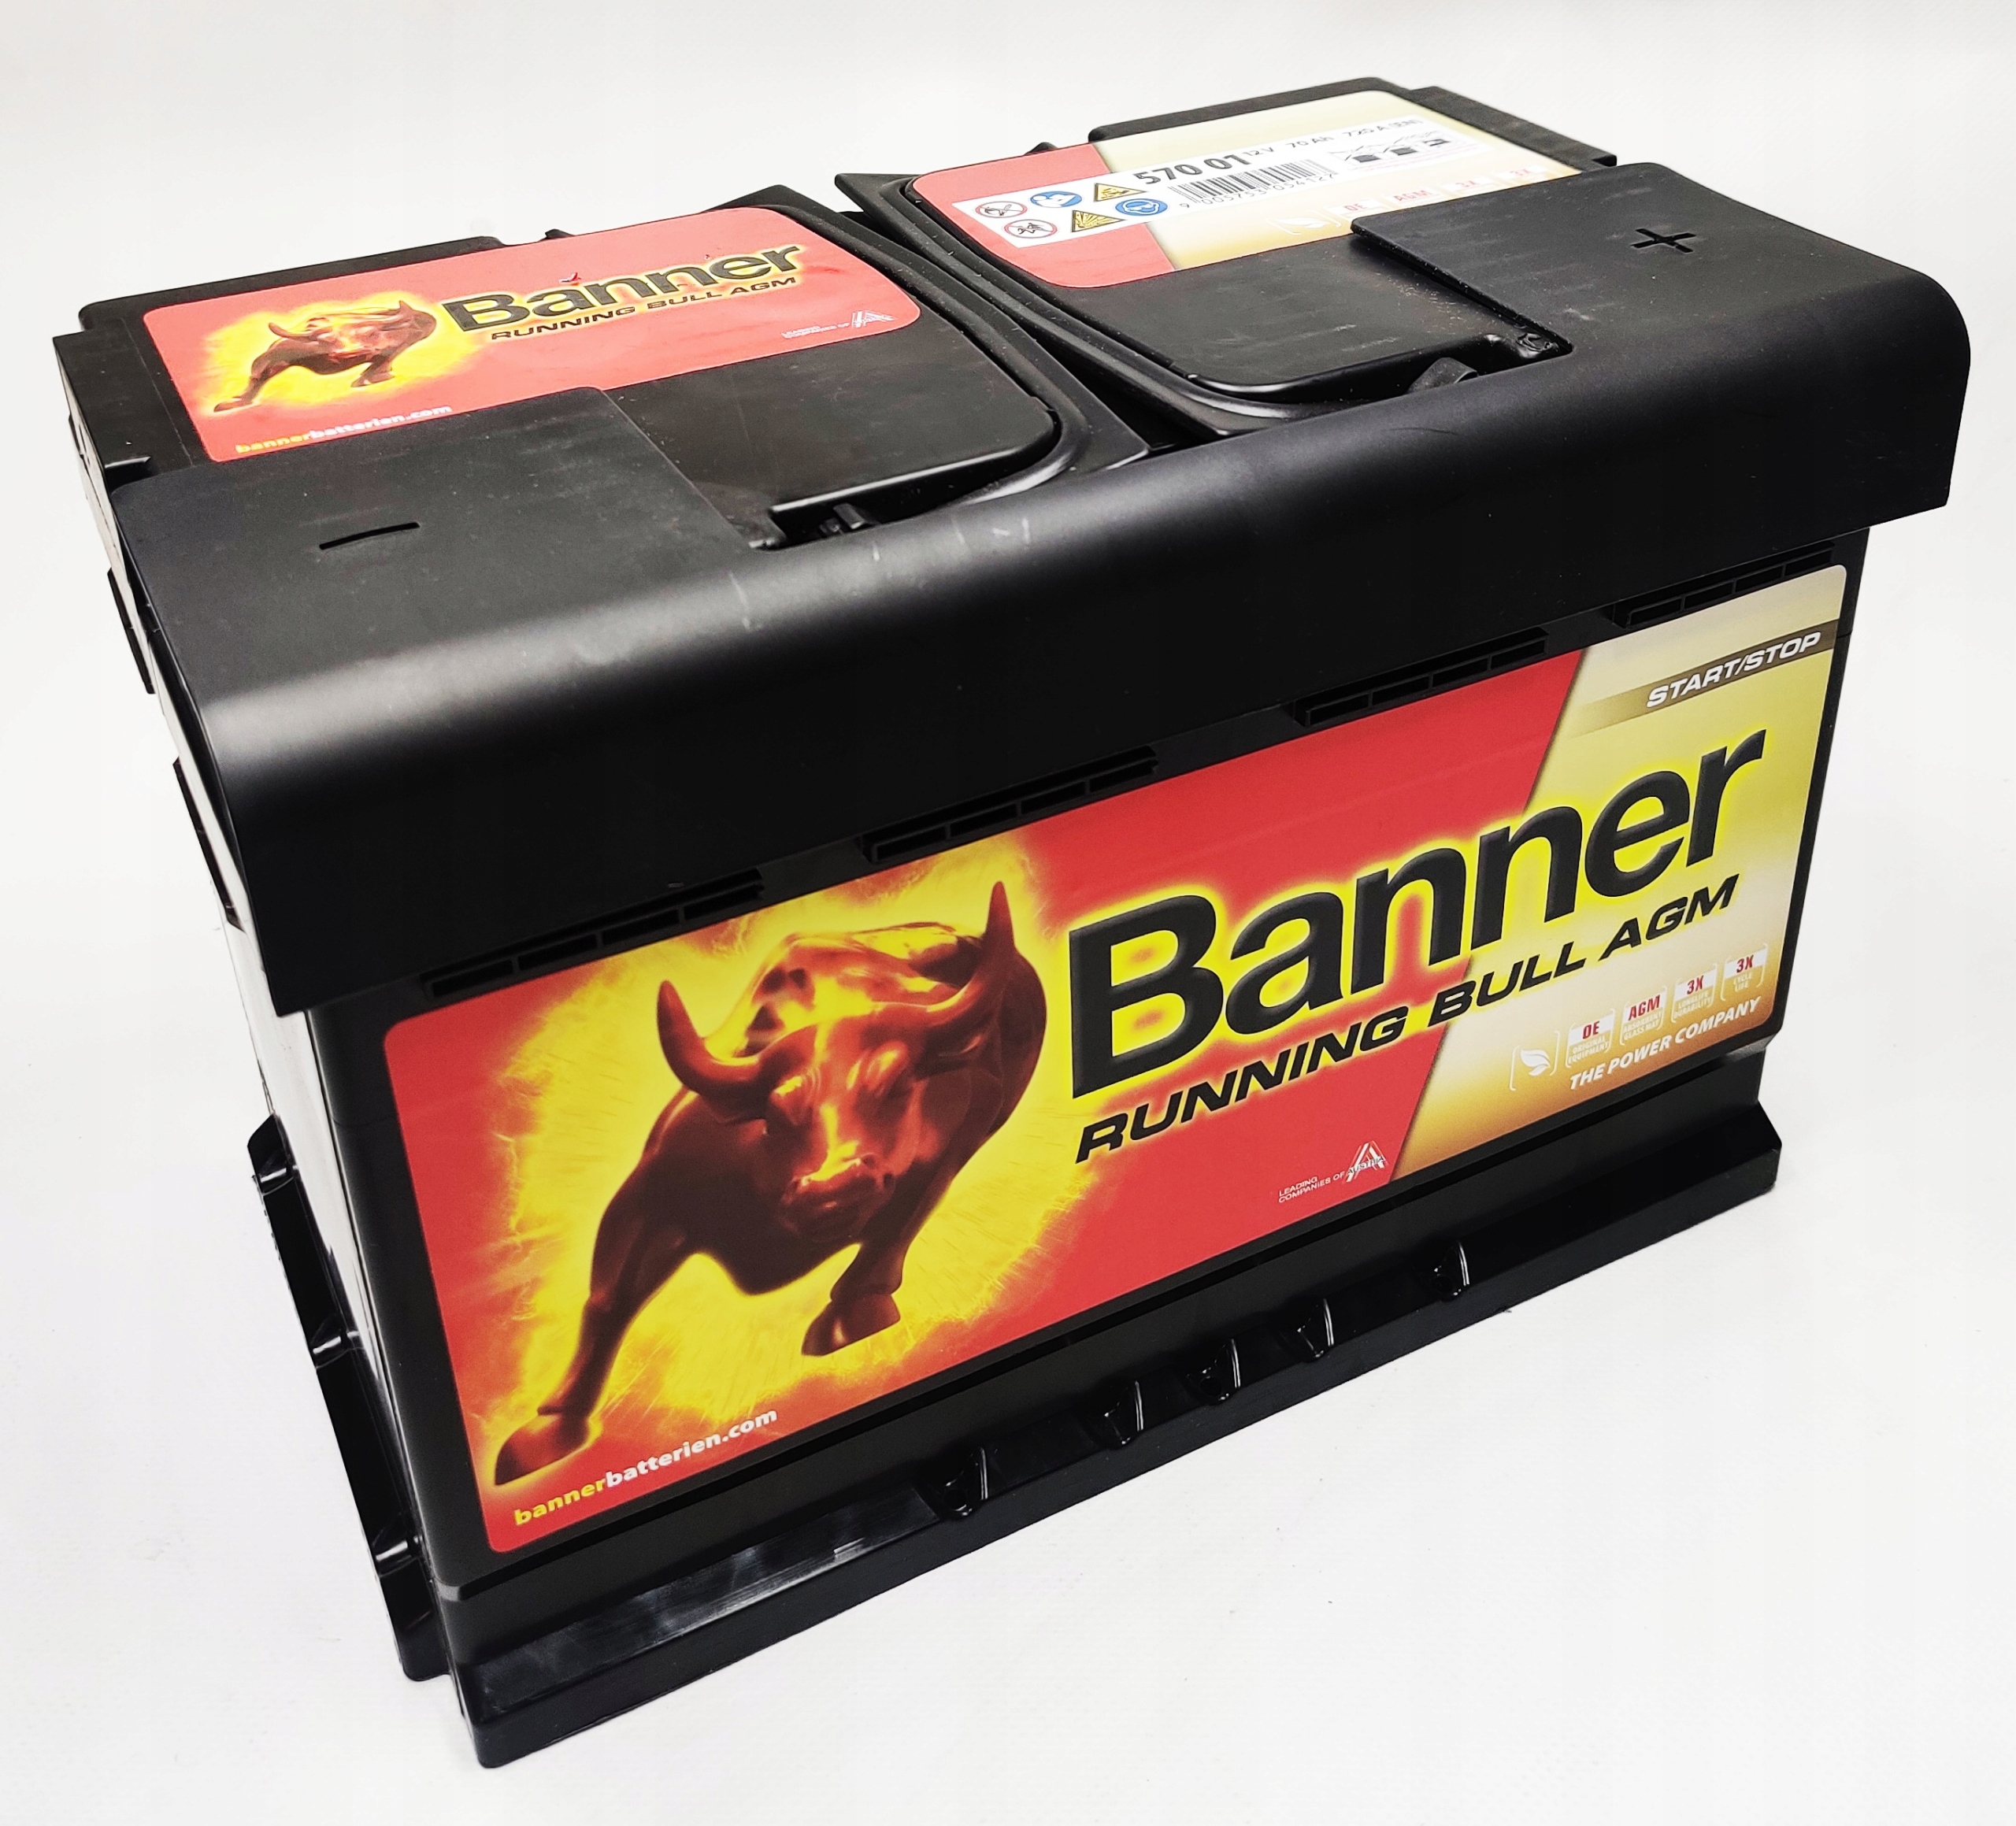 Batterie-BANNER-Running-Bull-AGM-Start-and-Stop-57001-12V-70Ah-720A